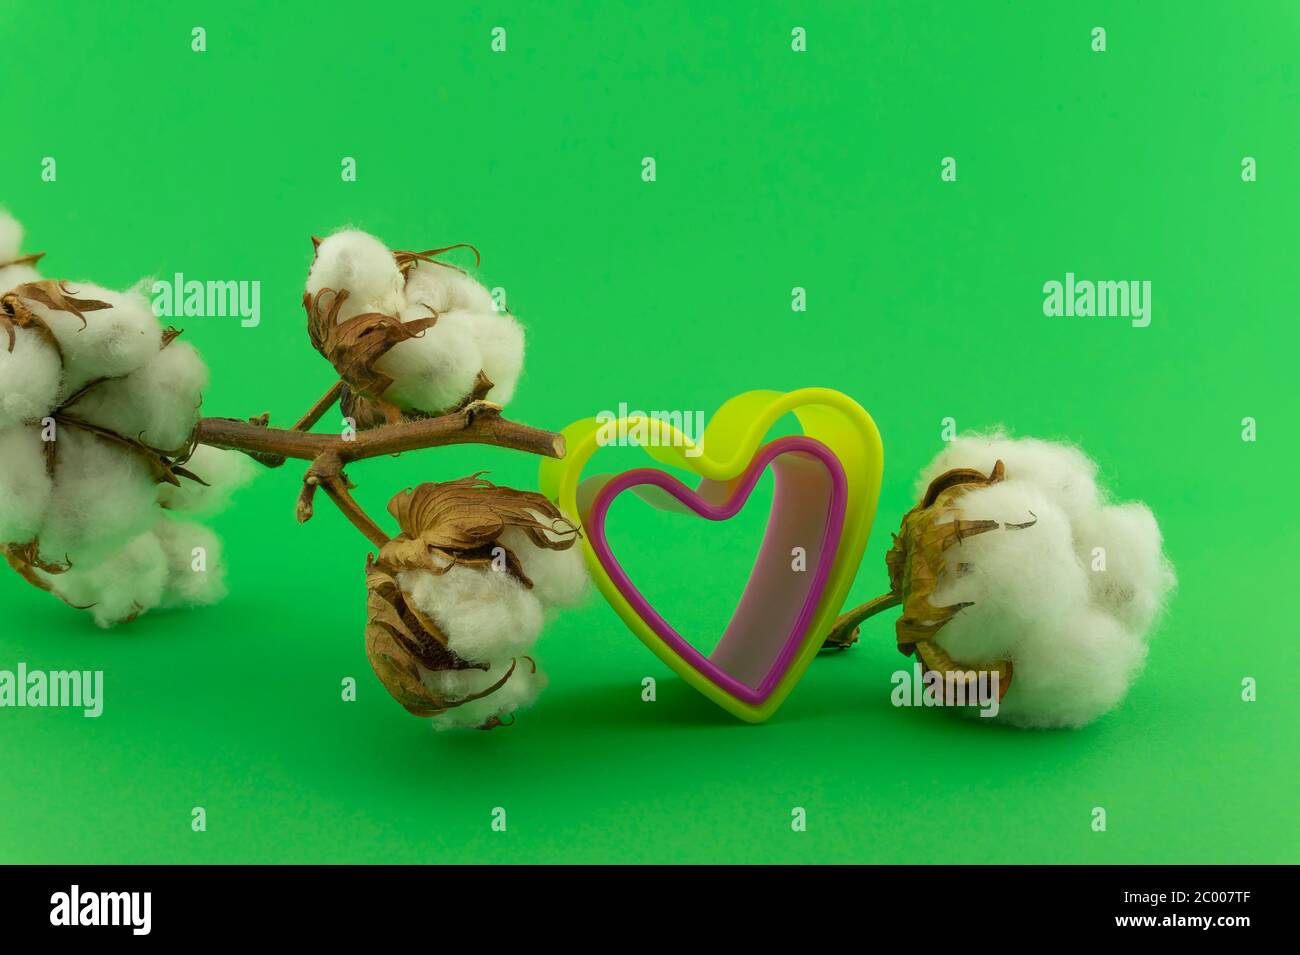 Concept anniversaire en coton avec emporte-pièces en forme de coeur coloré et pétons en coton sur fond vert Banque D'Images